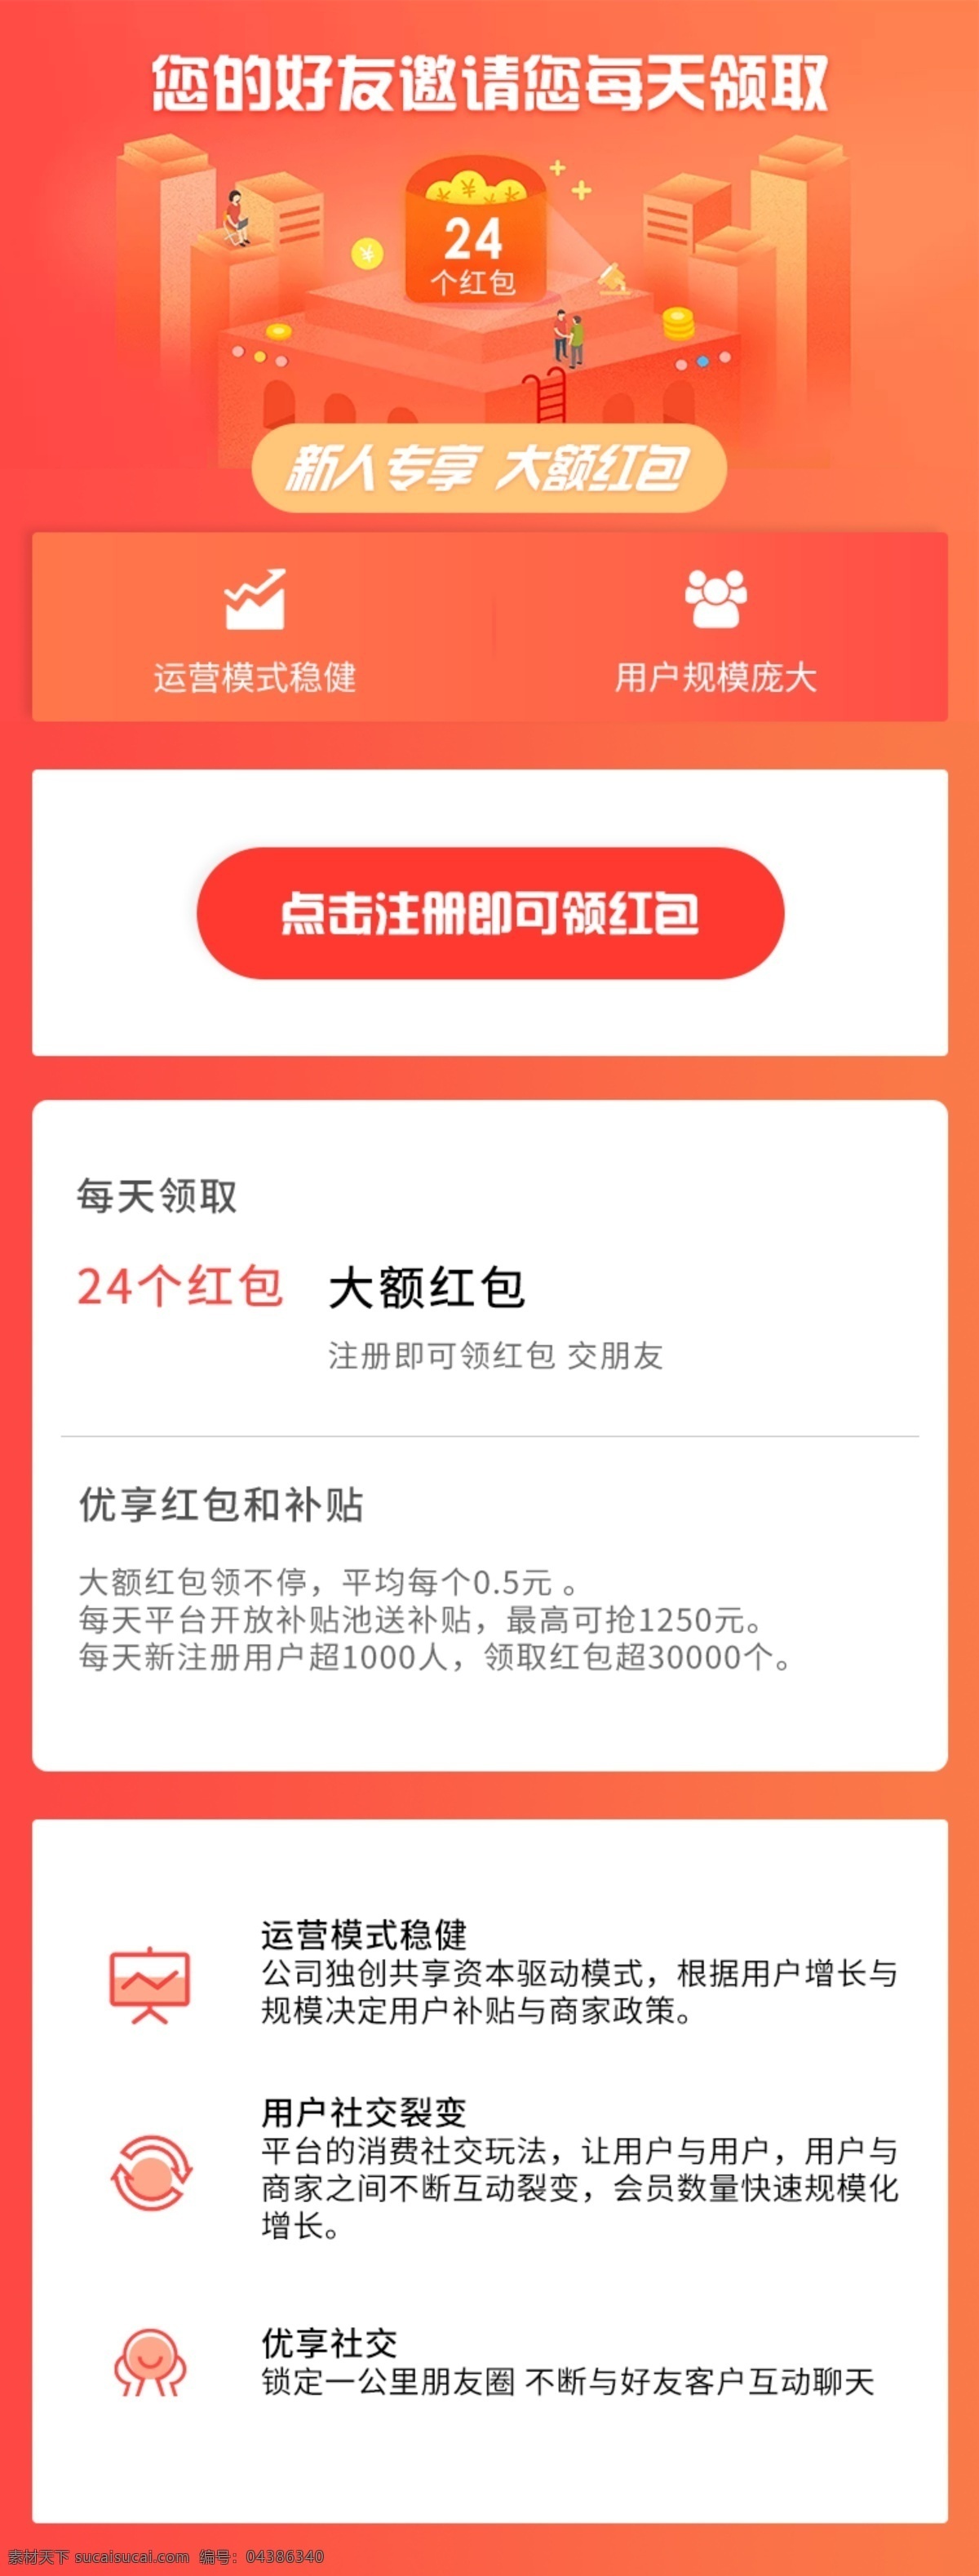 app 推广 邀请 注册 橘色界面 移动 端 界面设计 ui